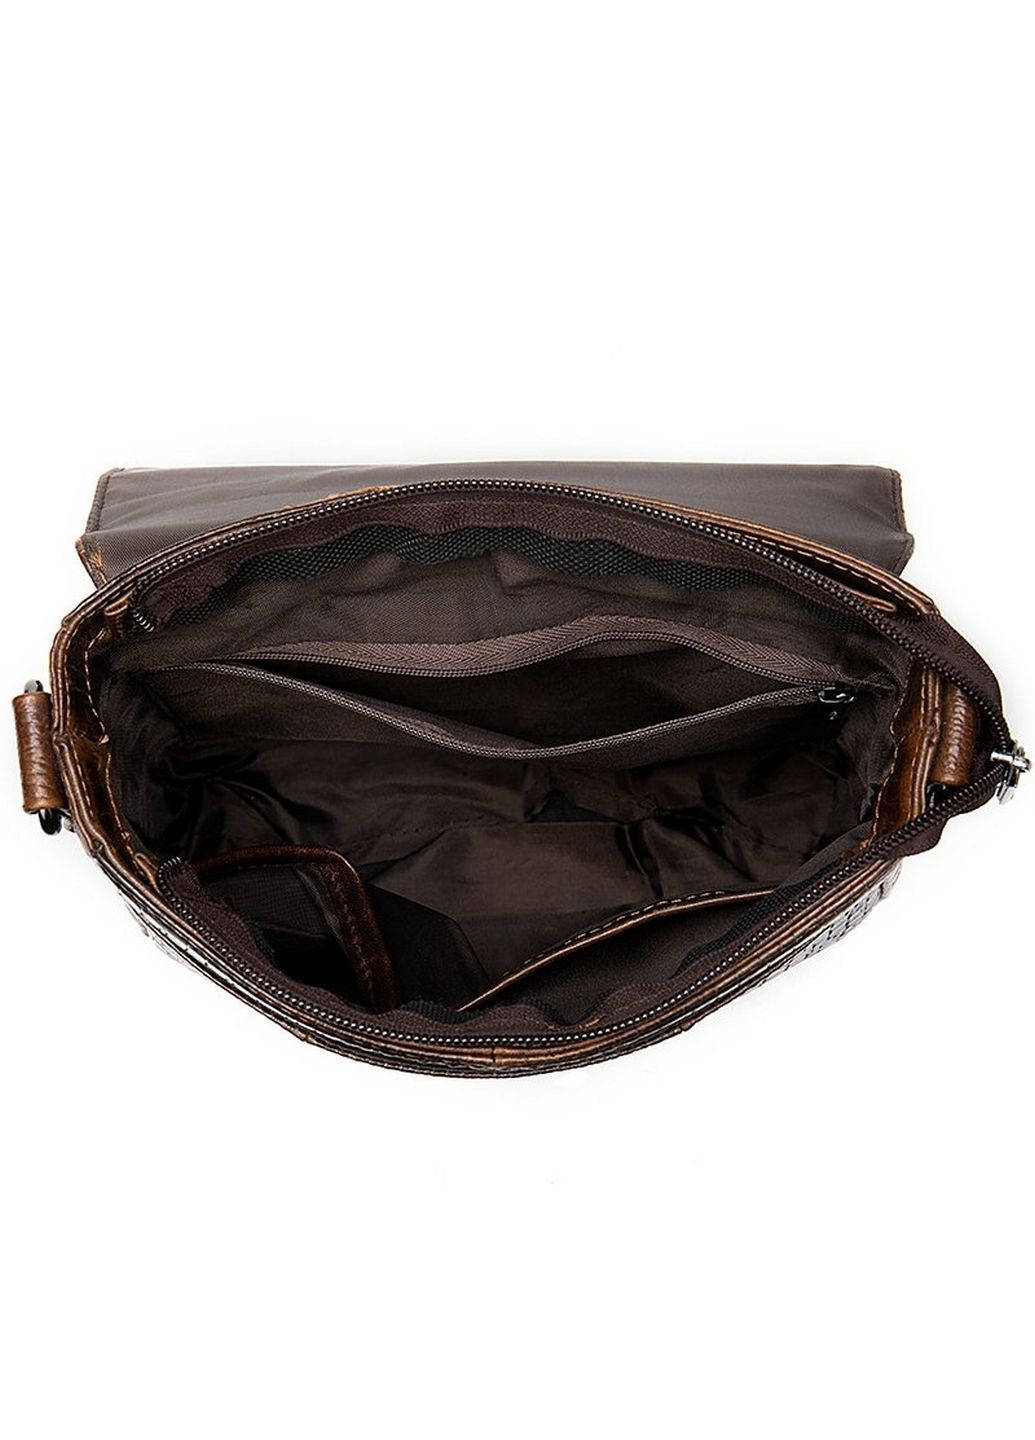 Мужская кожаная сумка Vintage (282593930)